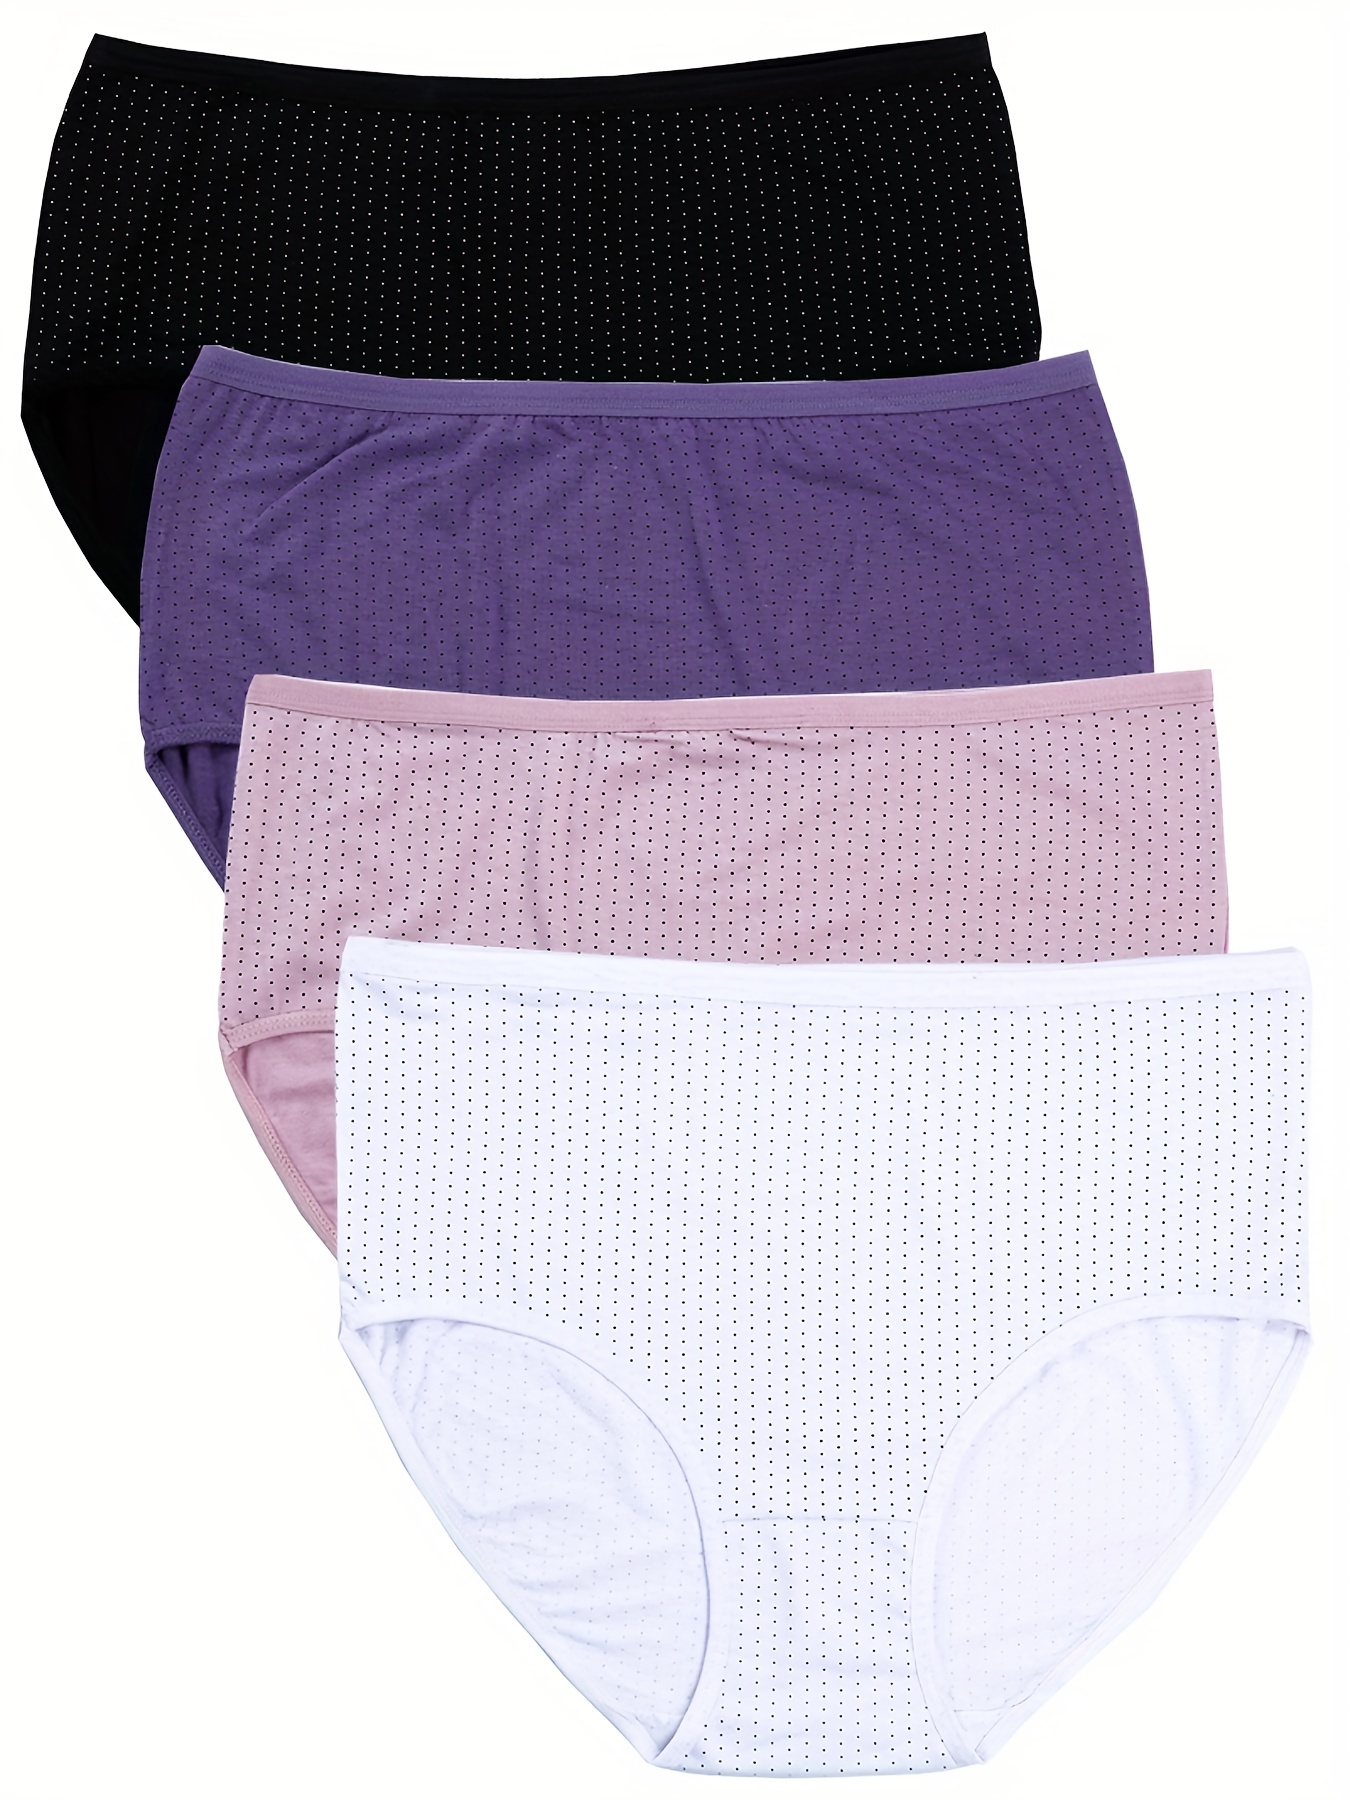 2pcs Cotton Underwear Women Lace Waistband Full Briefs Ladies High Leg Knickers  Ladies Cotton Seamless Underwear Tw